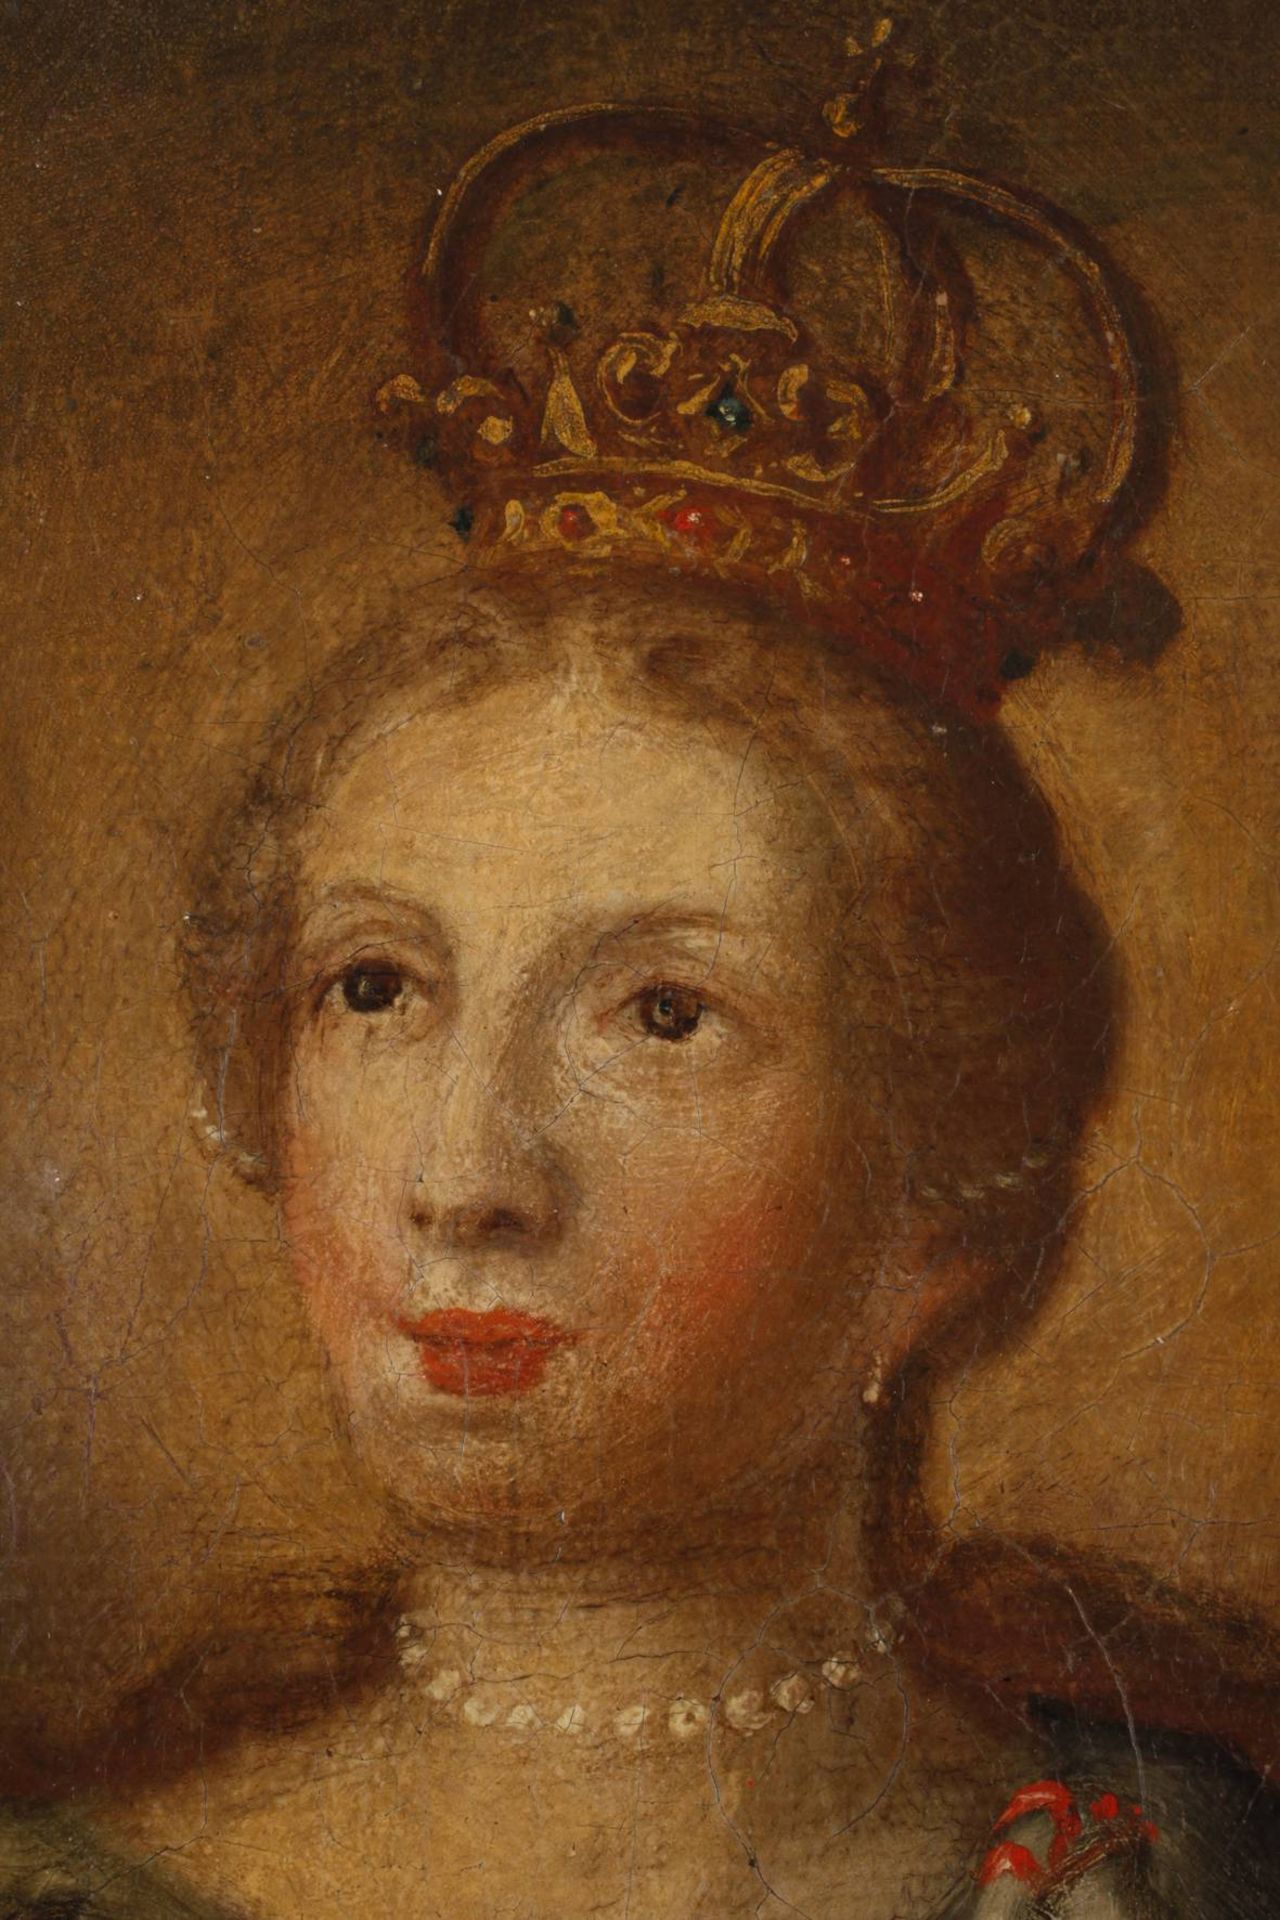 Helena von Konstantinopel barocke Darstellung der Mutter Kaiser Konstantins des Großen, Flavia Iulia - Image 2 of 5